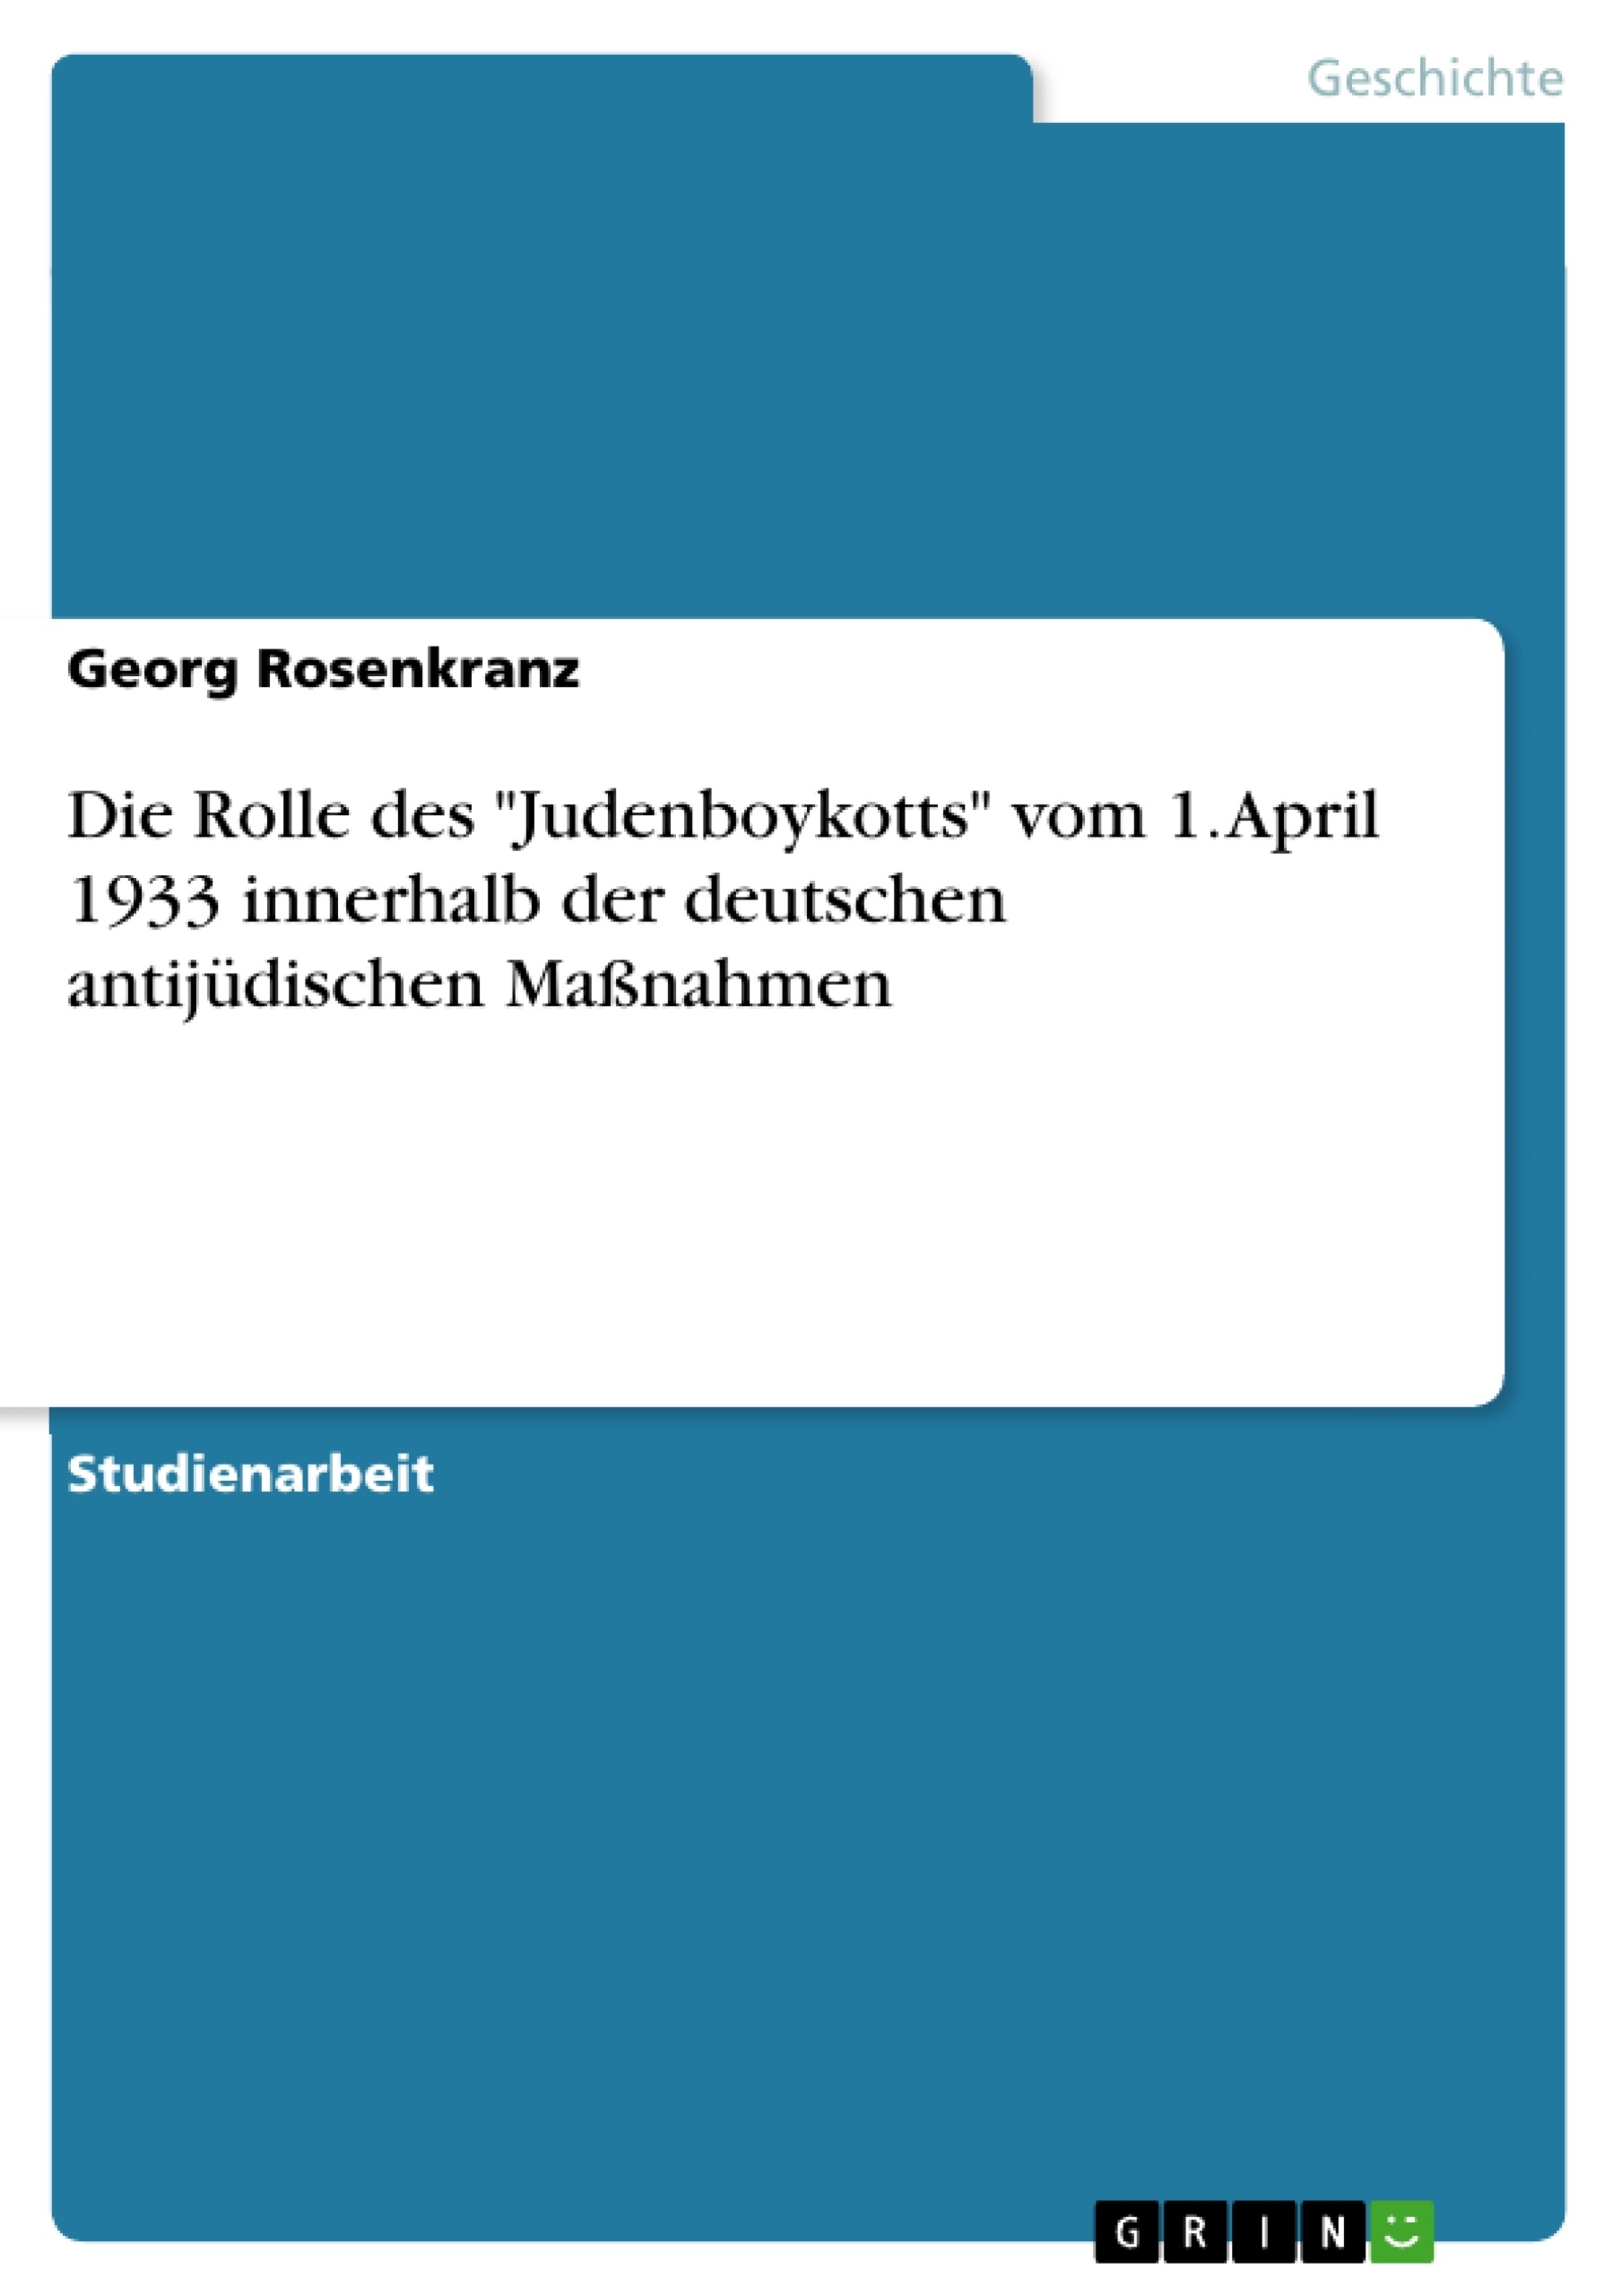 Title: Die Rolle des "Judenboykotts" vom 1. April 1933 innerhalb der deutschen antijüdischen Maßnahmen